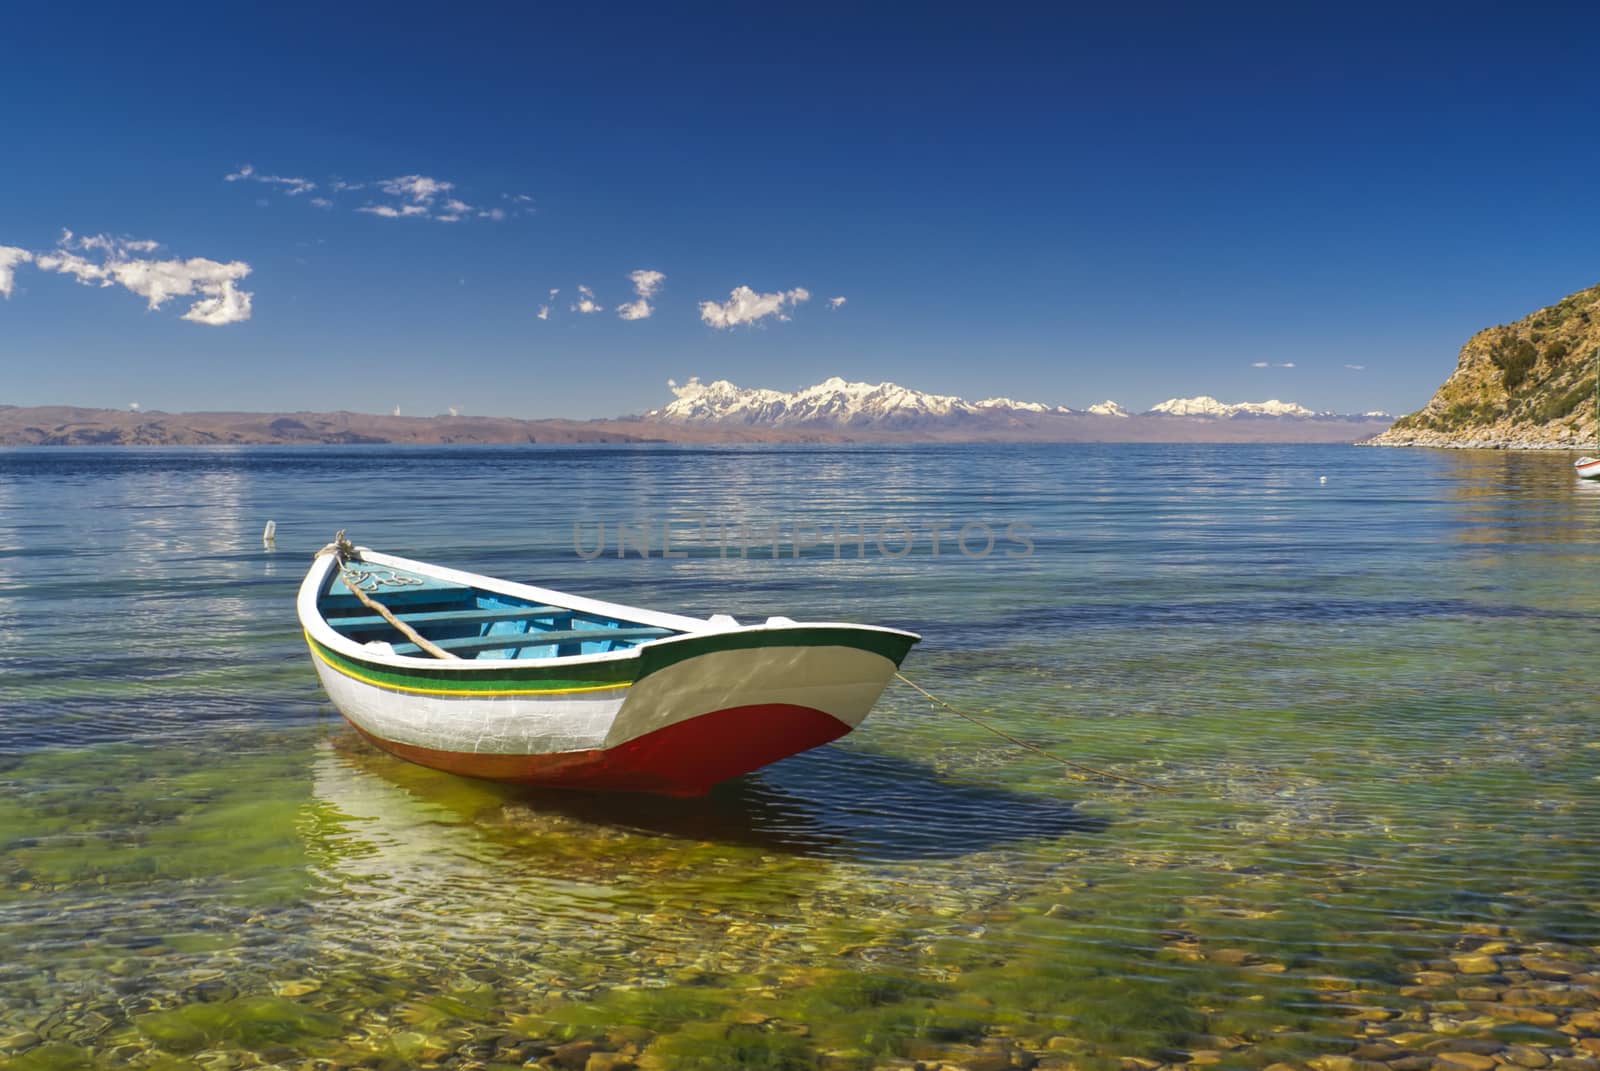 Small boat on the scenic coast of Isla del Sol, island on lake Titicaca in Bolivia